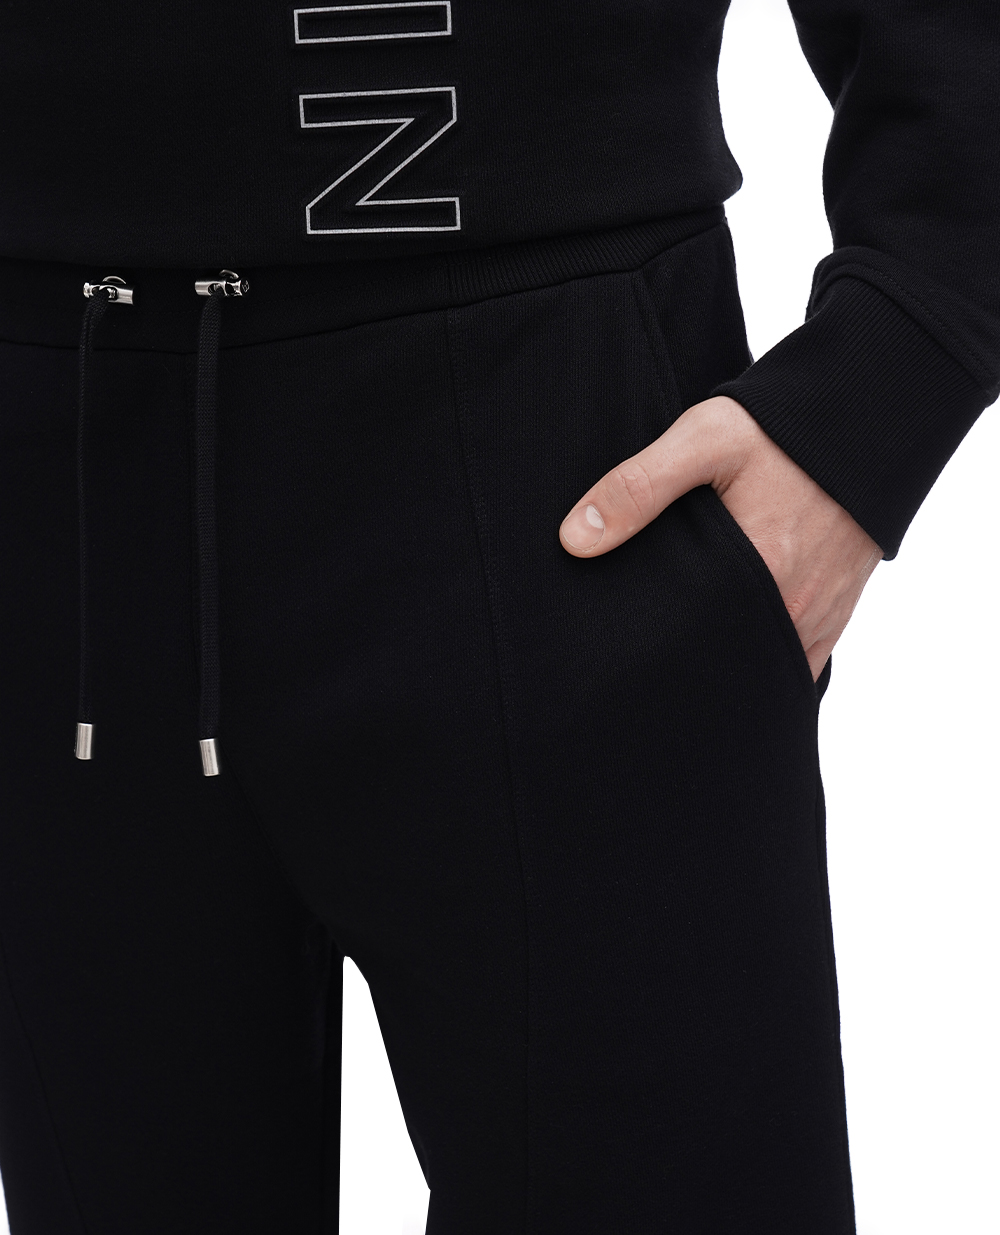 Спортивные брюки Balmain BH1OB235BC22, черный цвет • Купить в интернет-магазине Kameron